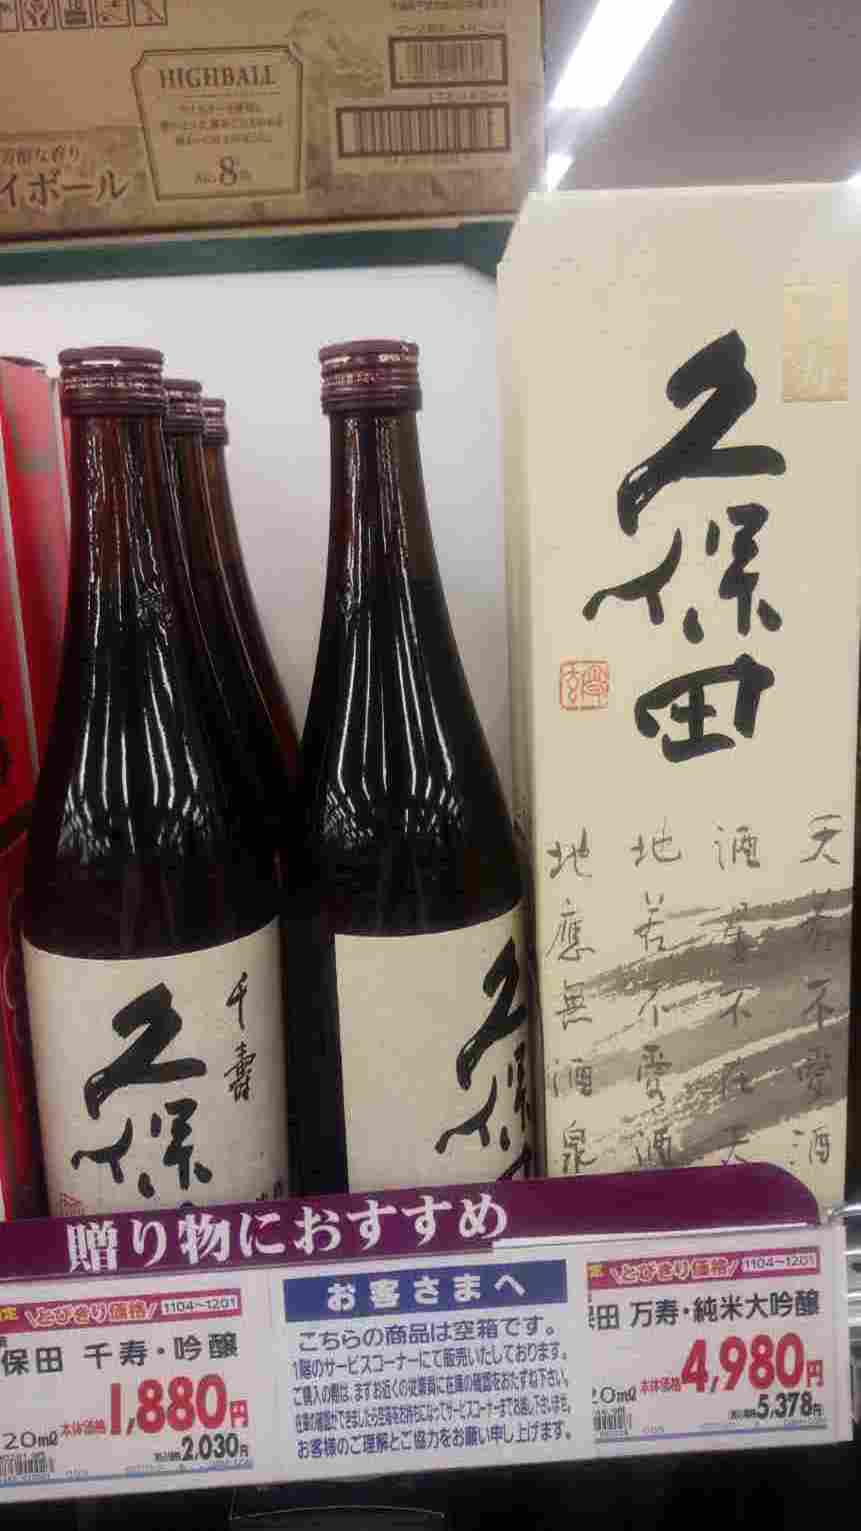 日本酒 あるスーパーで 久保田 万寿 を発見 マジでやってられない人生なんだが Blog書いてみる